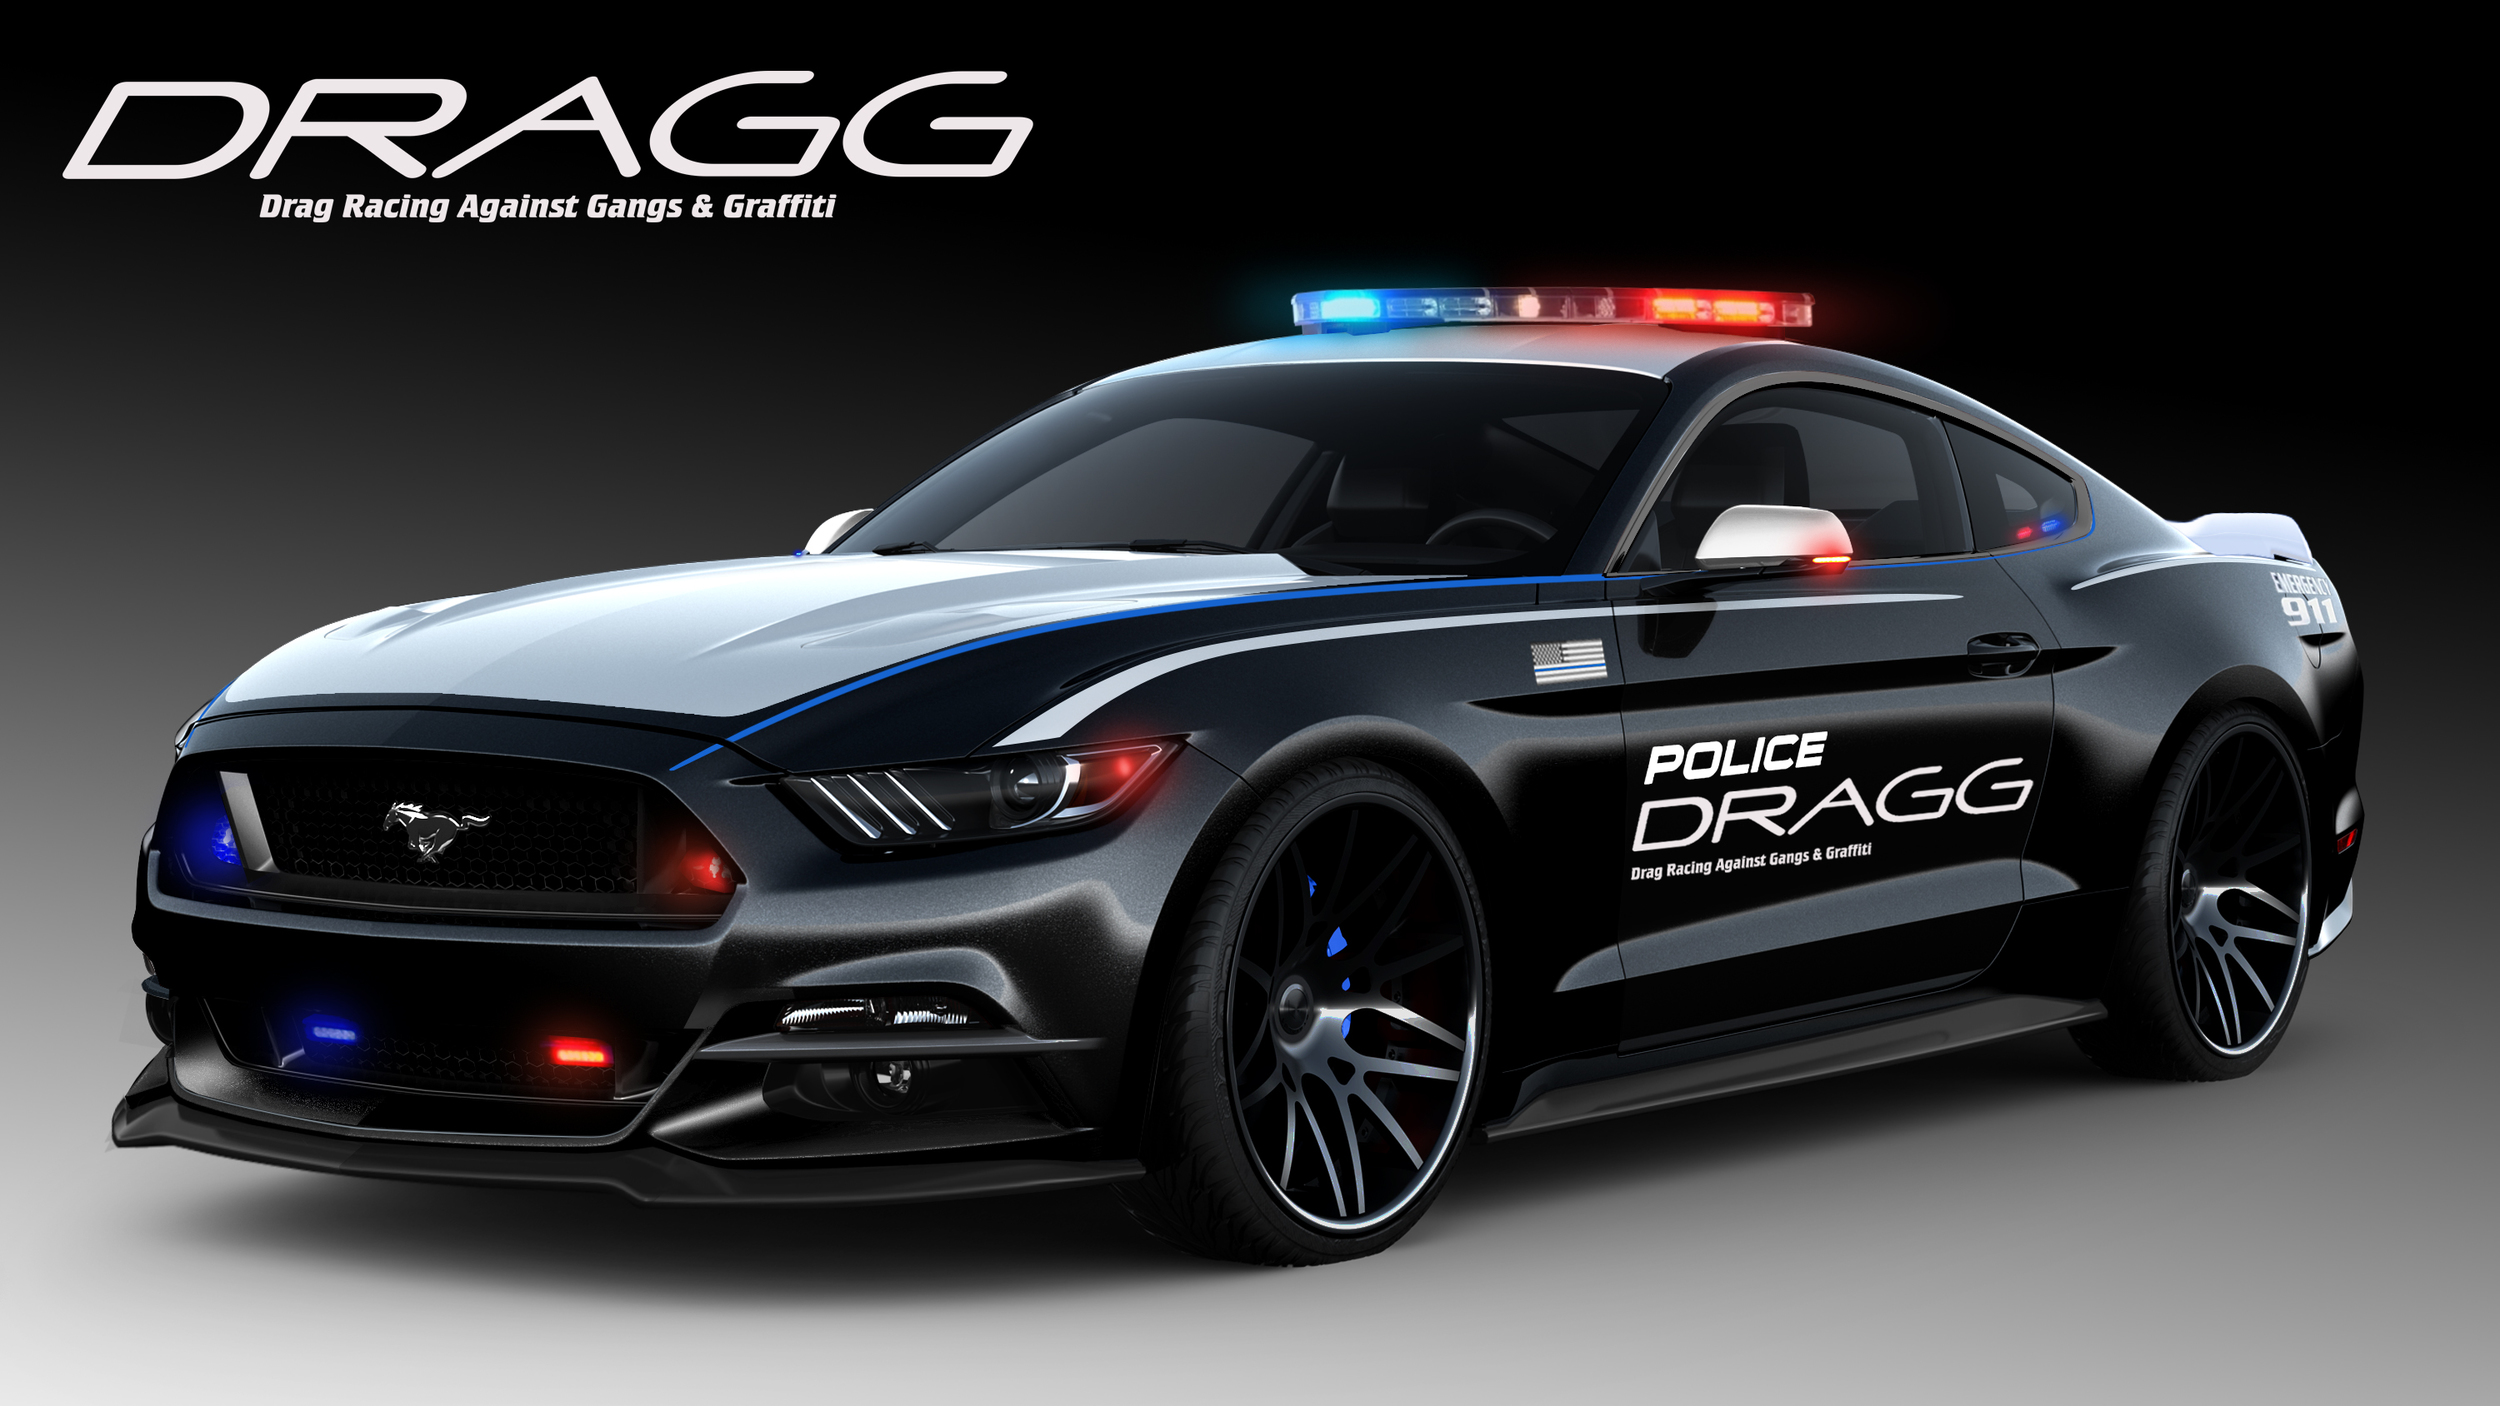 370-сильный маслкар Ford Mustang превратили в полицейский ...